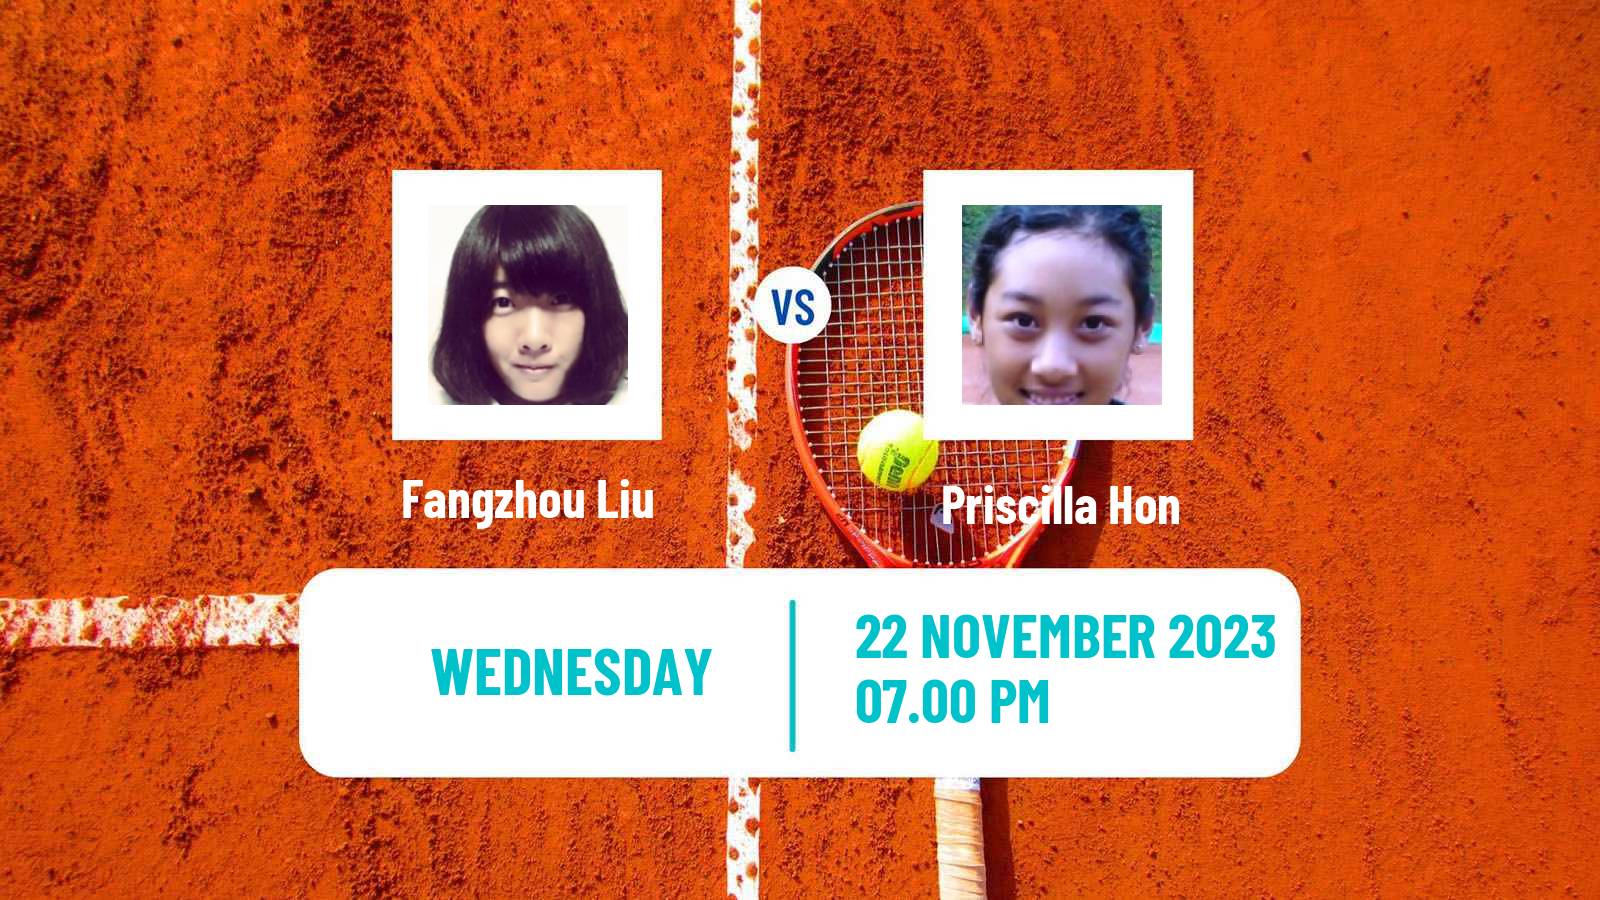 Tennis ITF W60 Brisbane Women Fangzhou Liu - Priscilla Hon